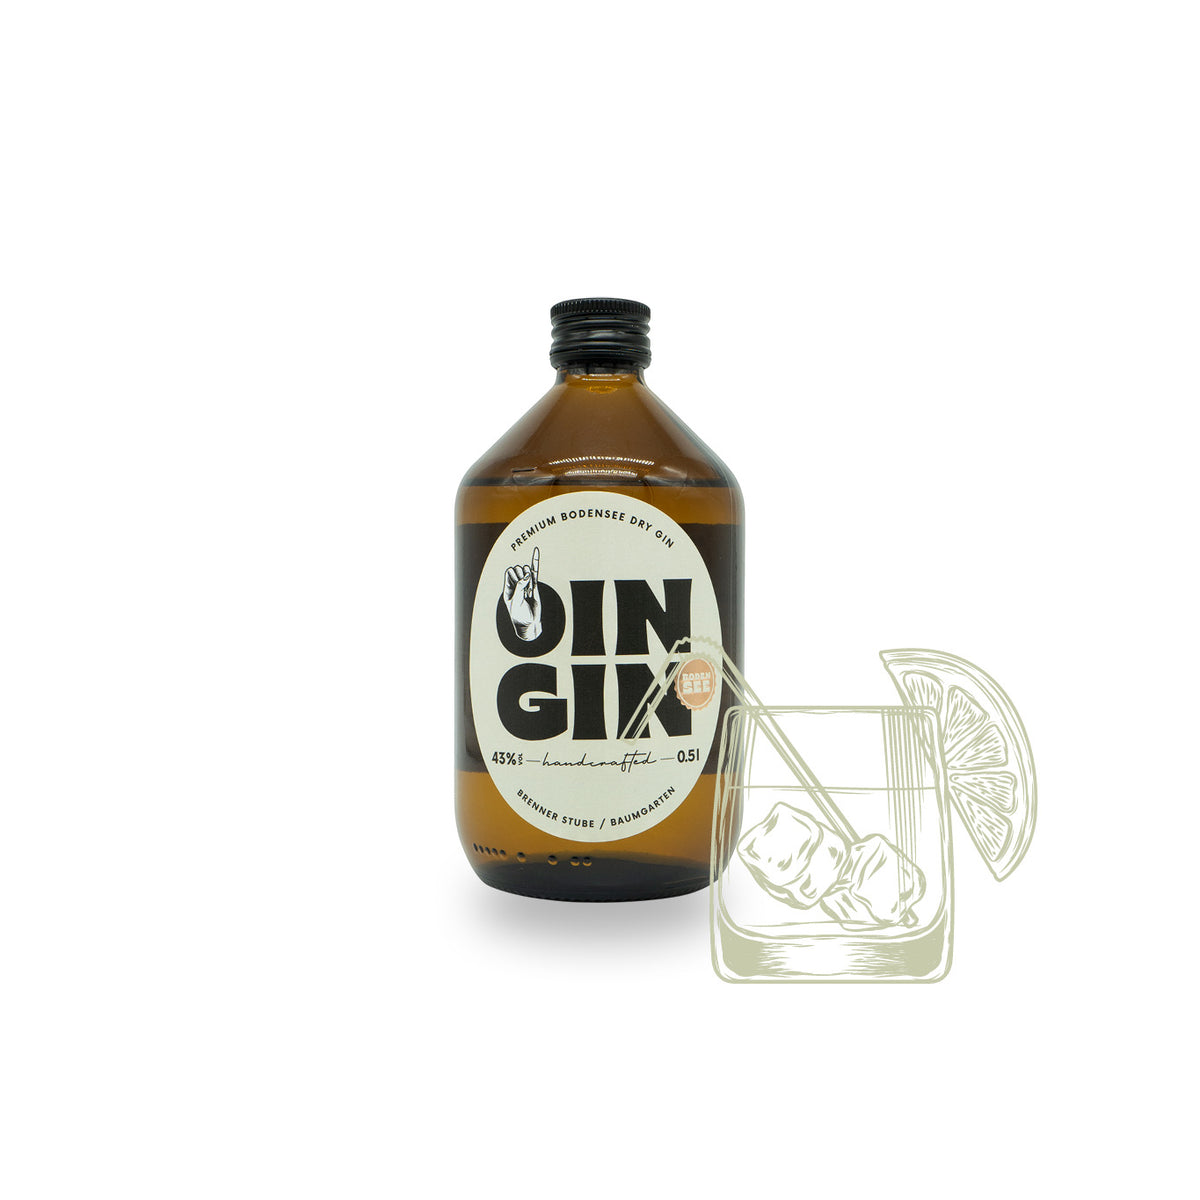 Original Oin Gin online kaufen